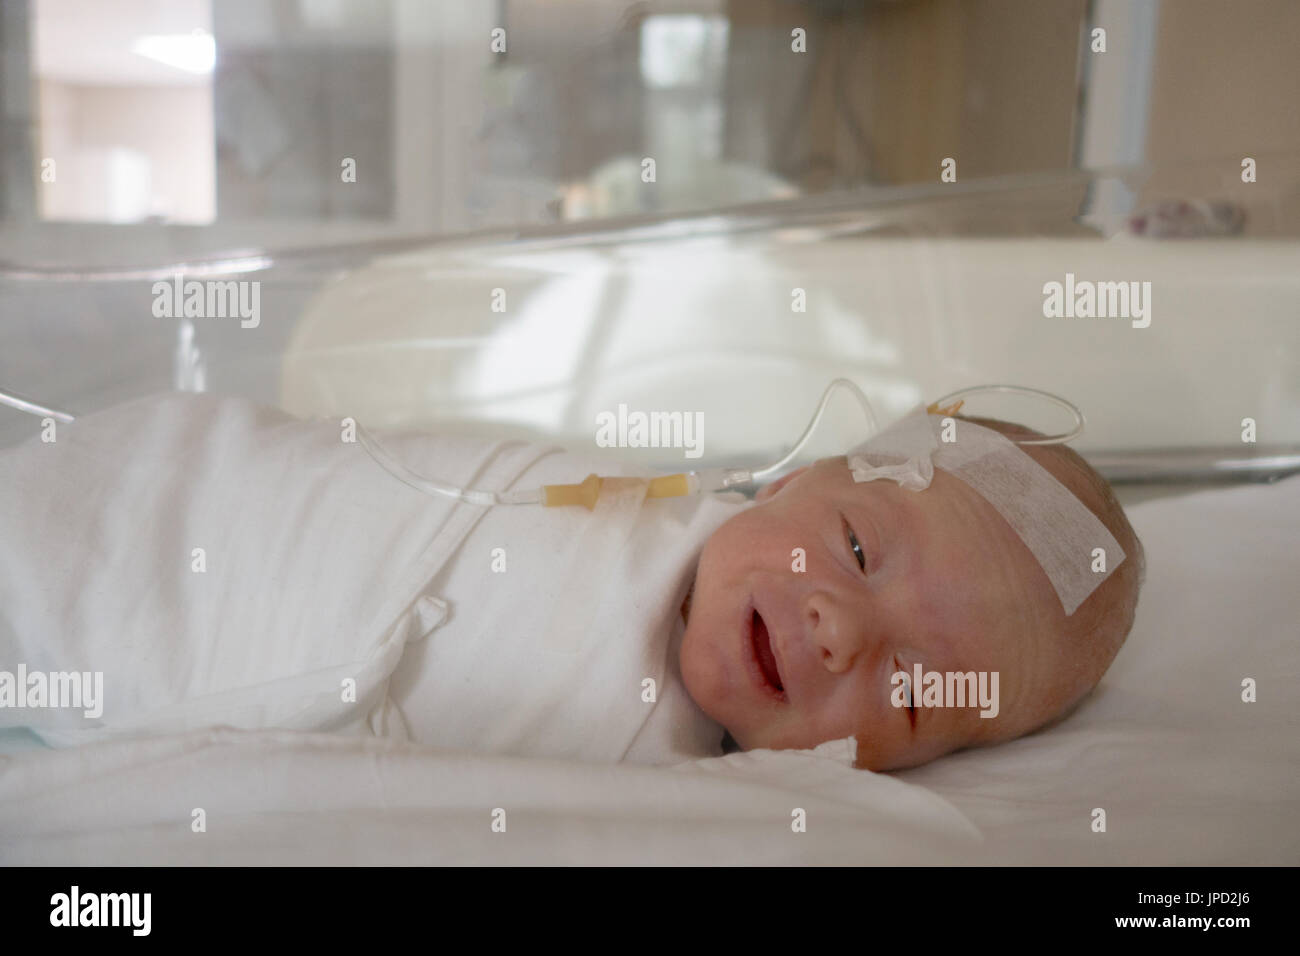 Bébé nouveau-né de dormir sur une goutte dans un hôpital Banque D'Images